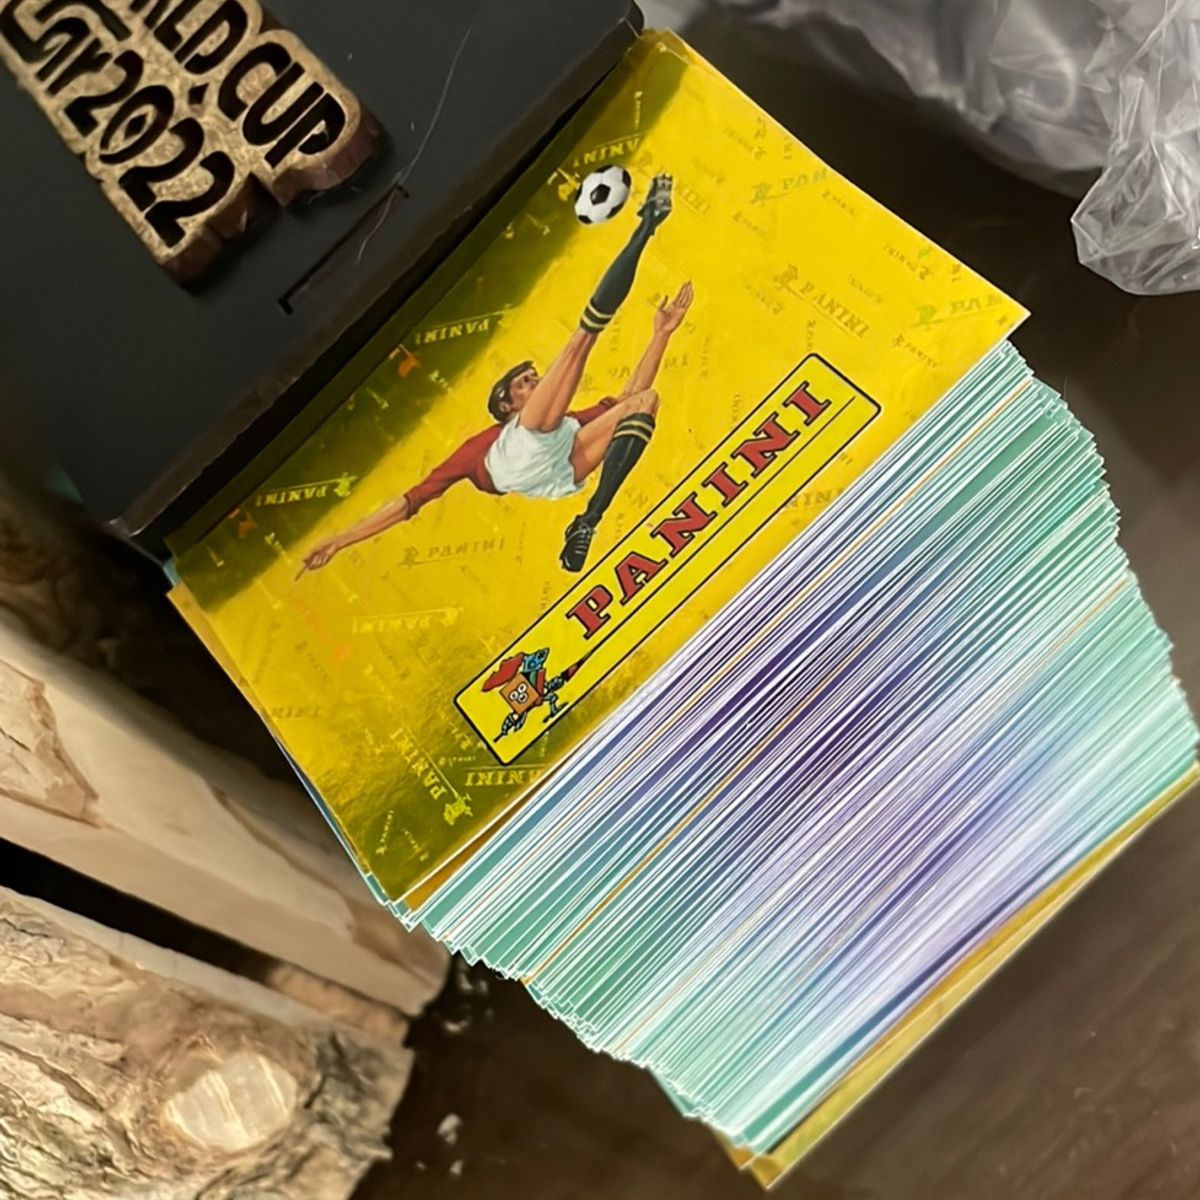 Figurinha Extra Mbappé Prata Copa 2022 | Livro Panini Nunca Usado 87987002  | enjoei